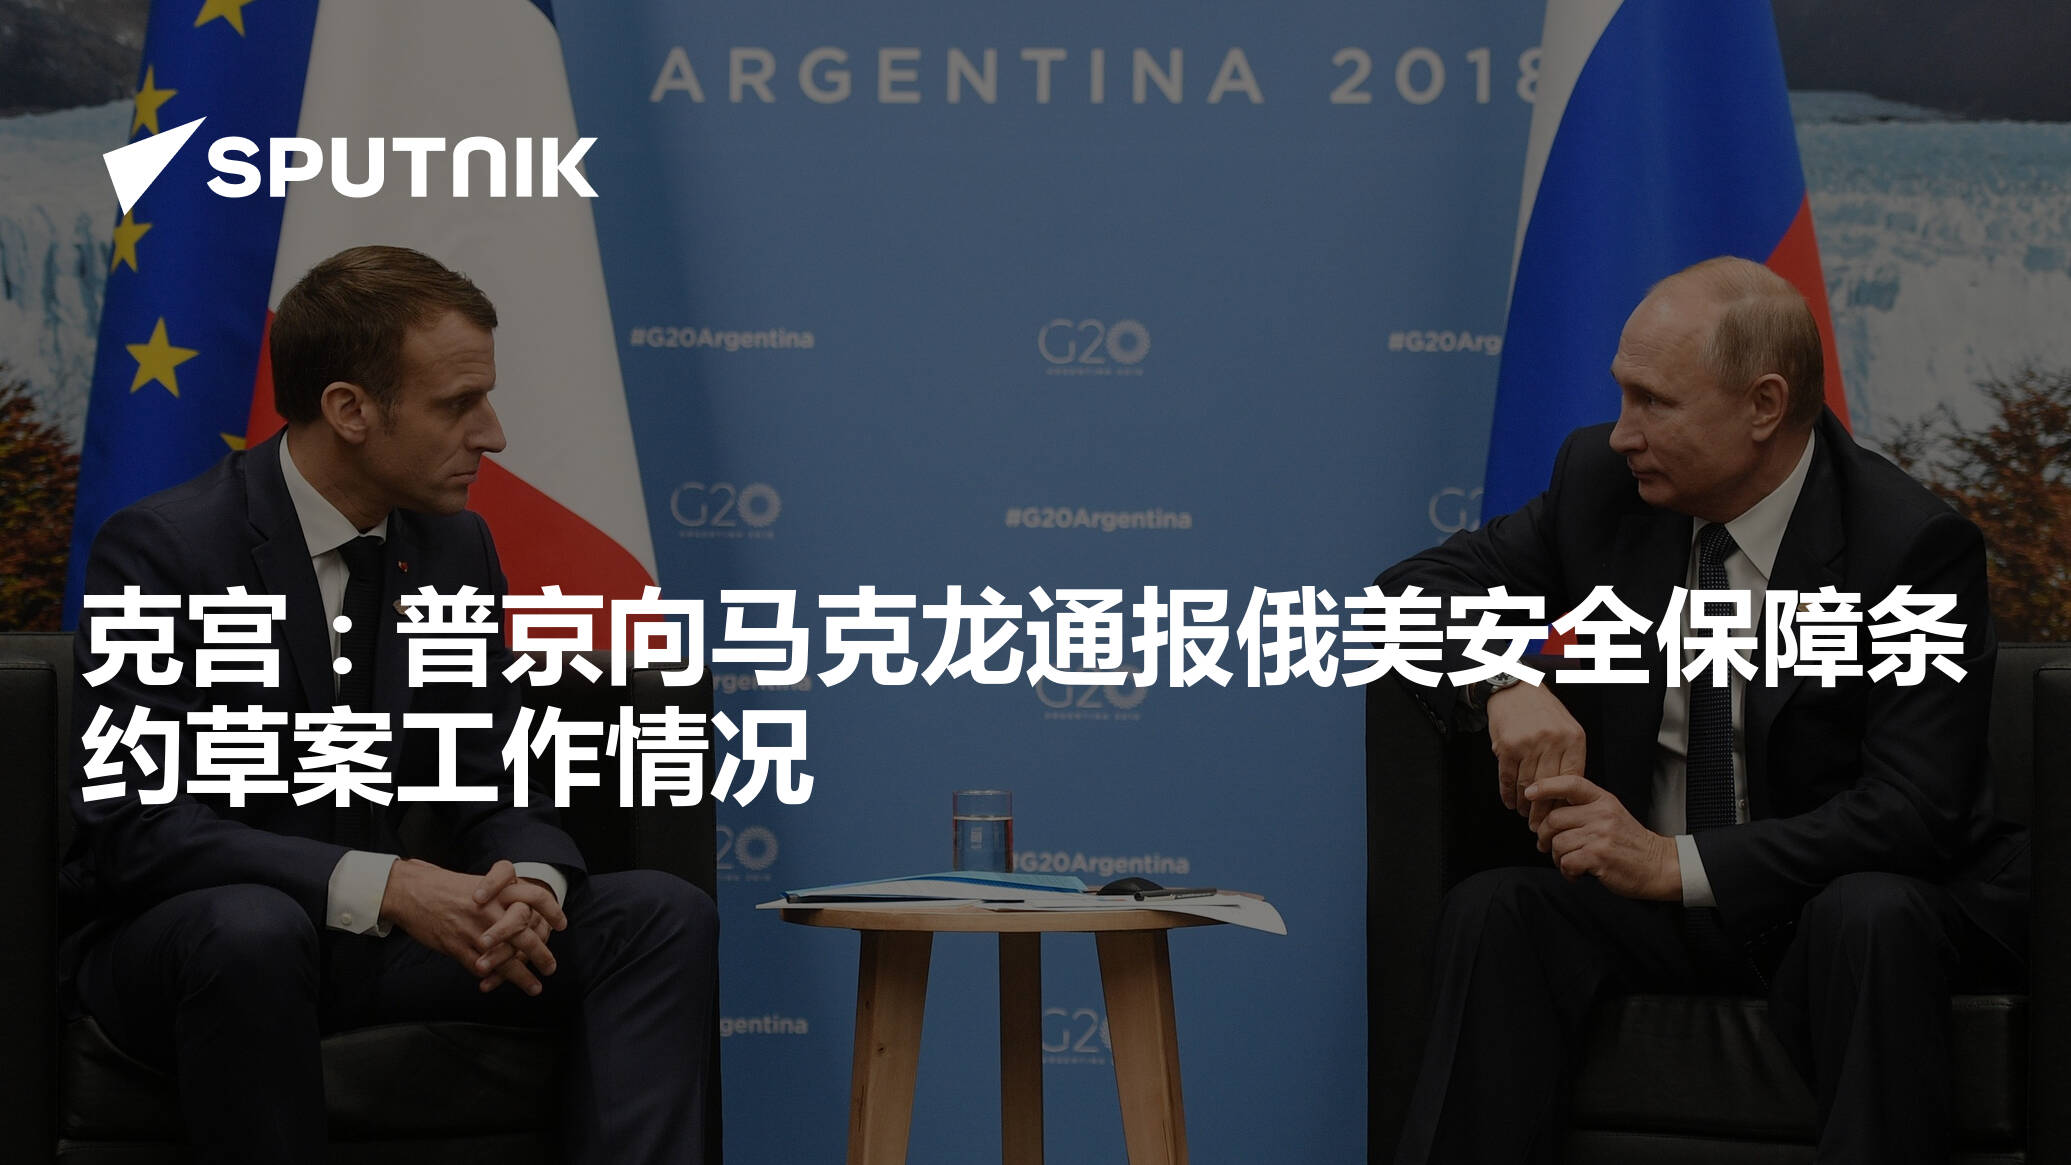 时隔两月,G7之前,马克龙"再约"普京赴法密谈